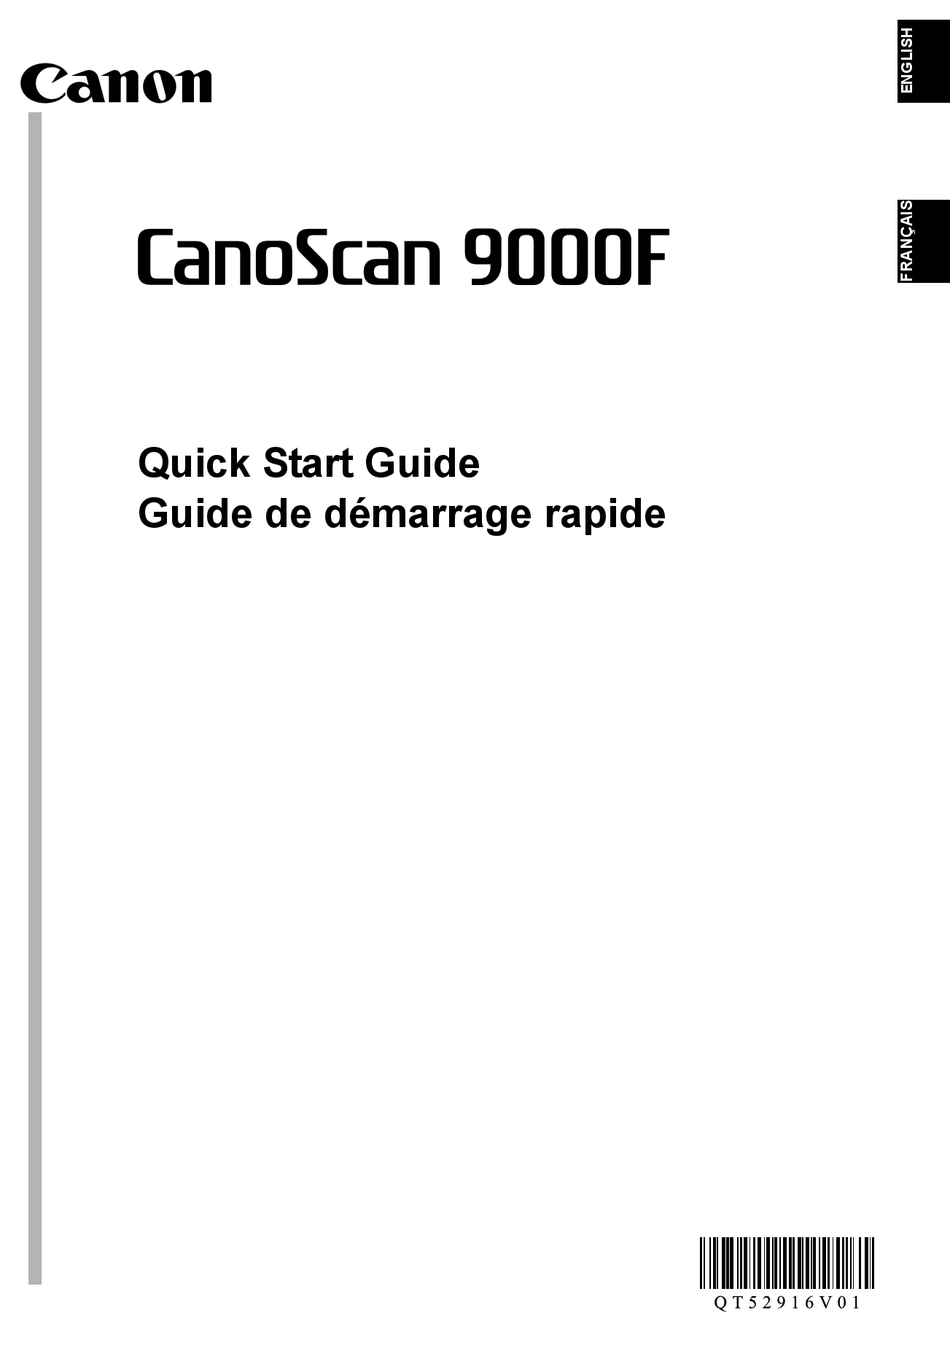 Canon 9000f mark ii driver